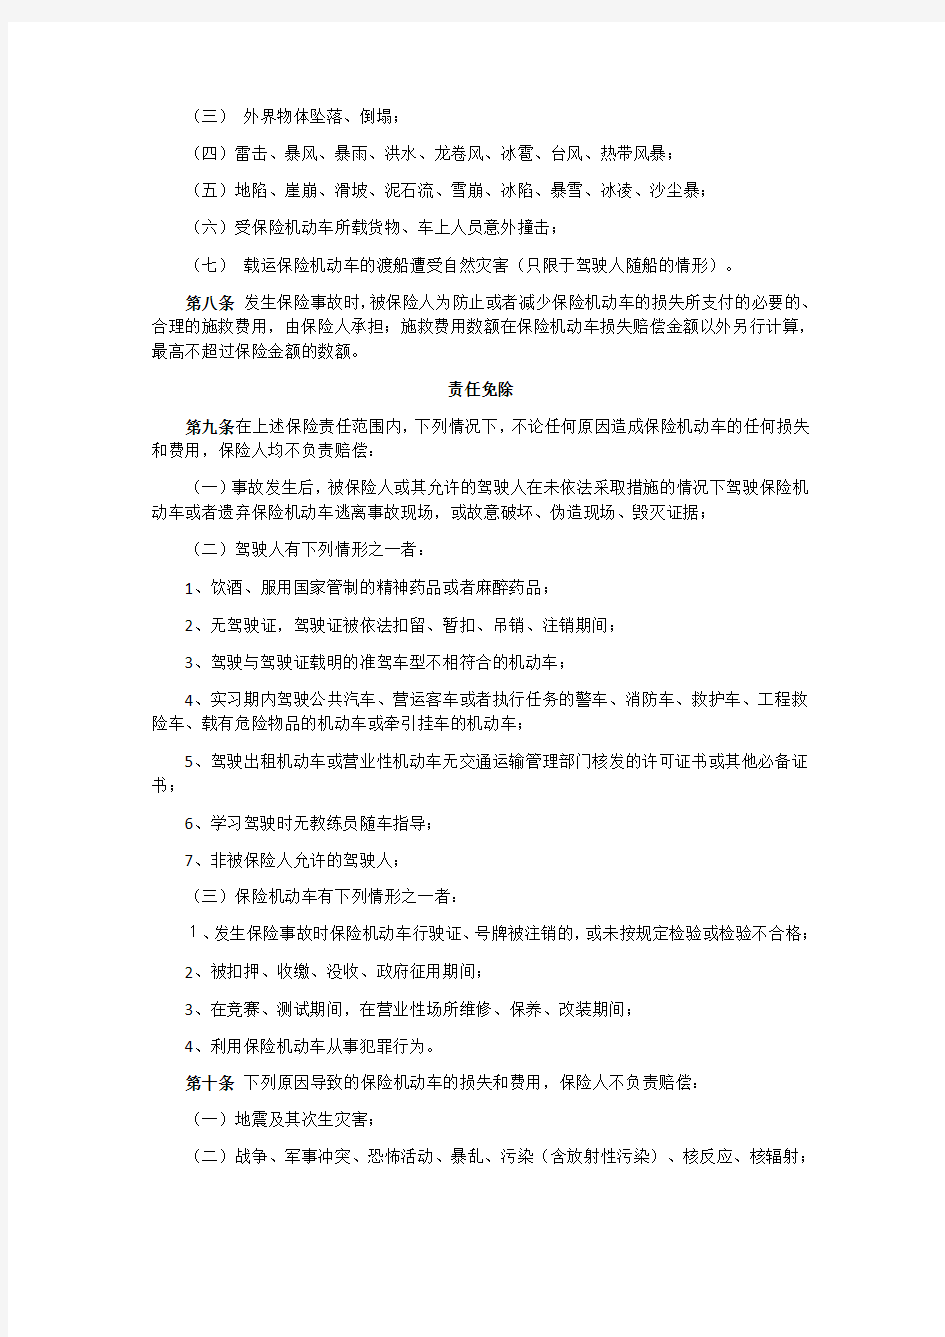 中国保险行业协会机动车辆商业保险示范条款 2012